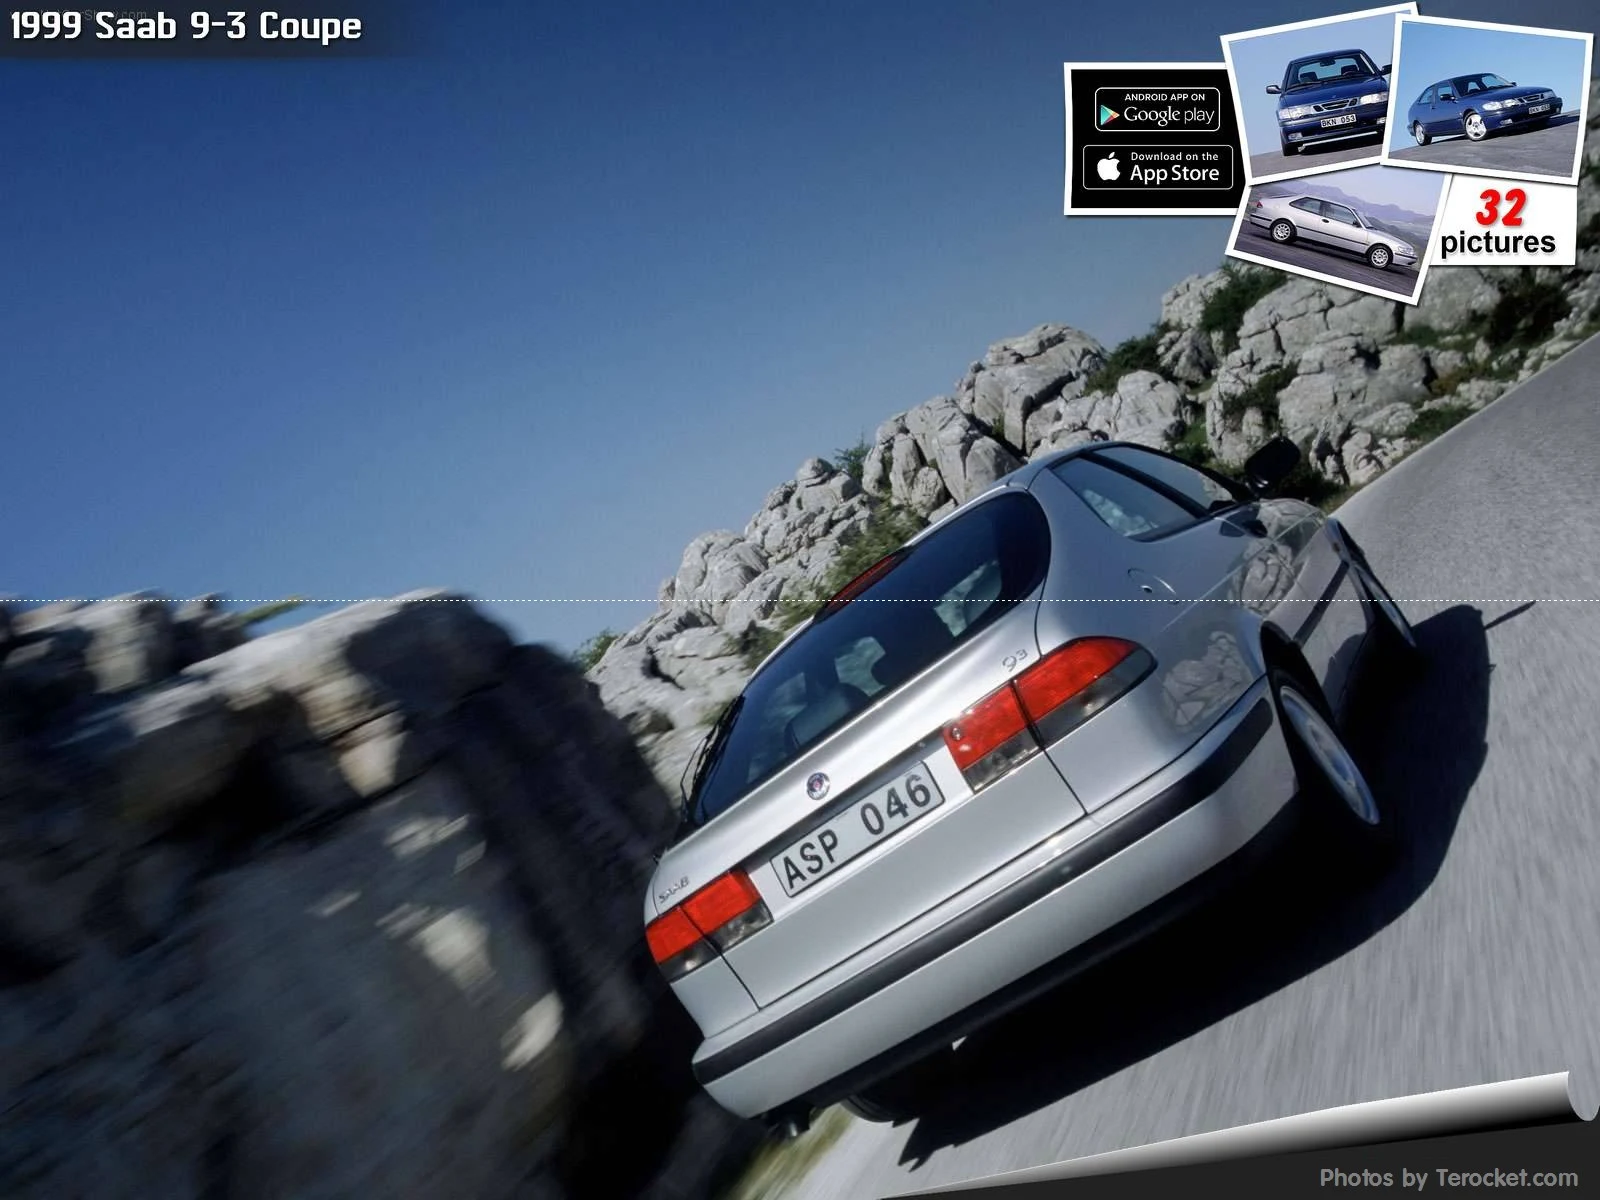 Hình ảnh xe ô tô Saab 9-3 Coupe 1999 & nội ngoại thất